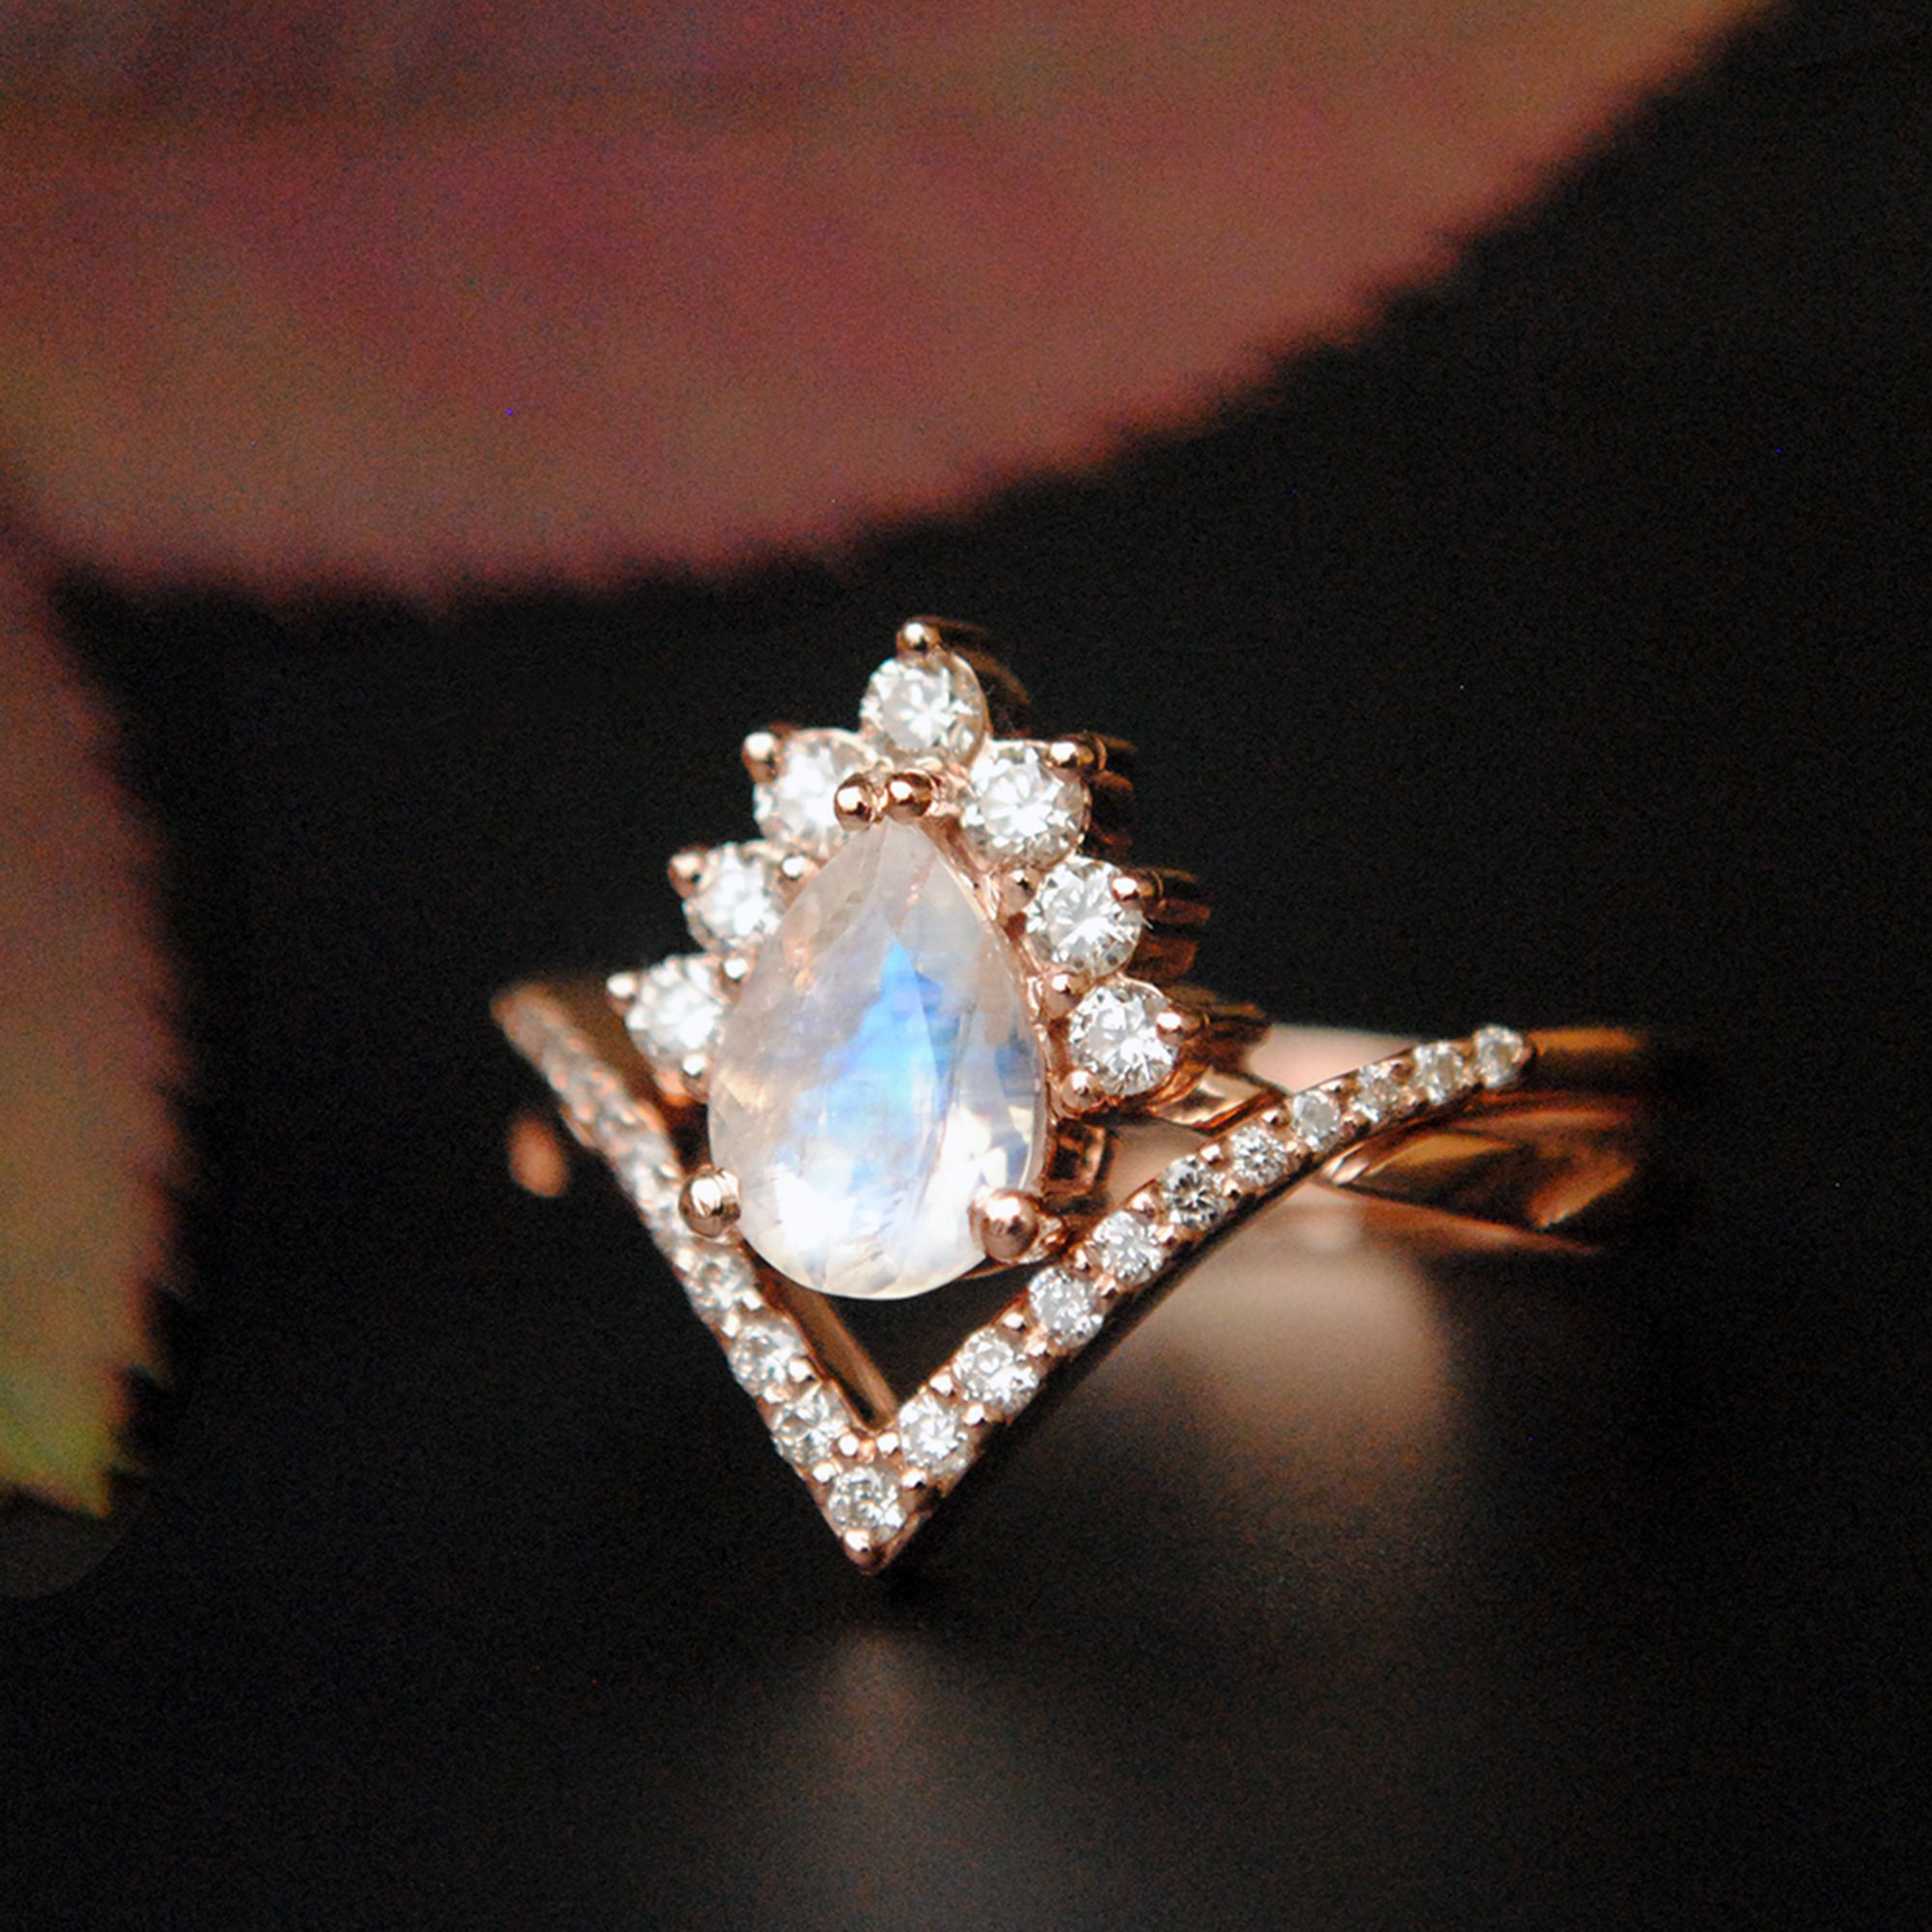 WHITE GOLD MOISSANITE ENGAGEMENT RING SET MOI-7145S | Interlocking wedding  rings, Best engagement rings, White gold diamond engagement ring